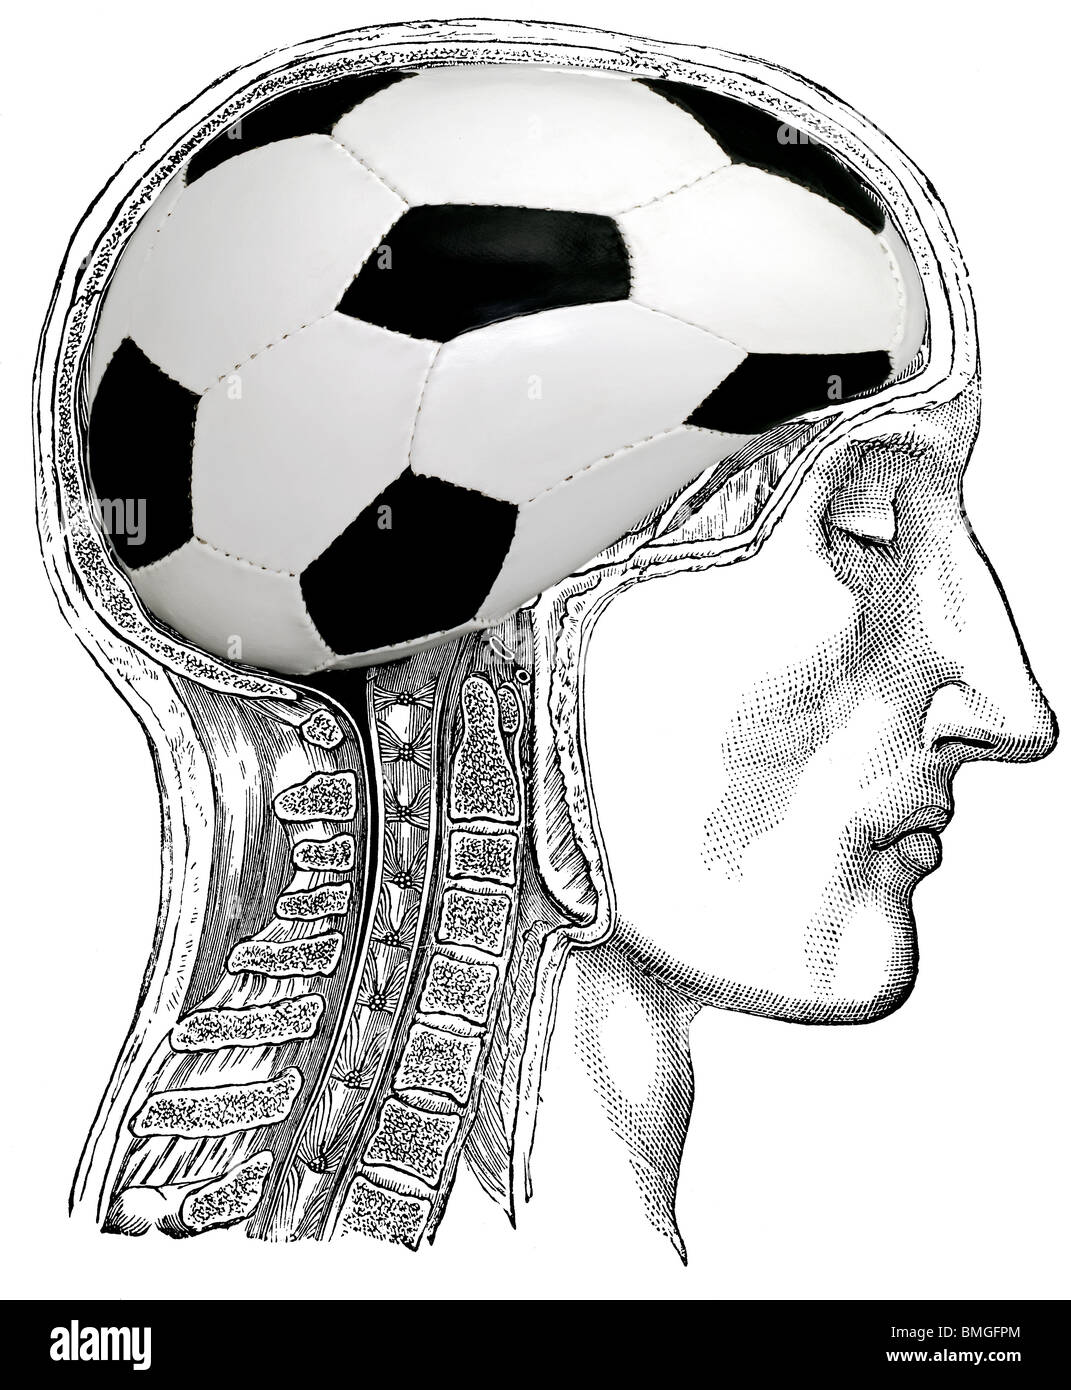 Soccer in mind Stock Photo